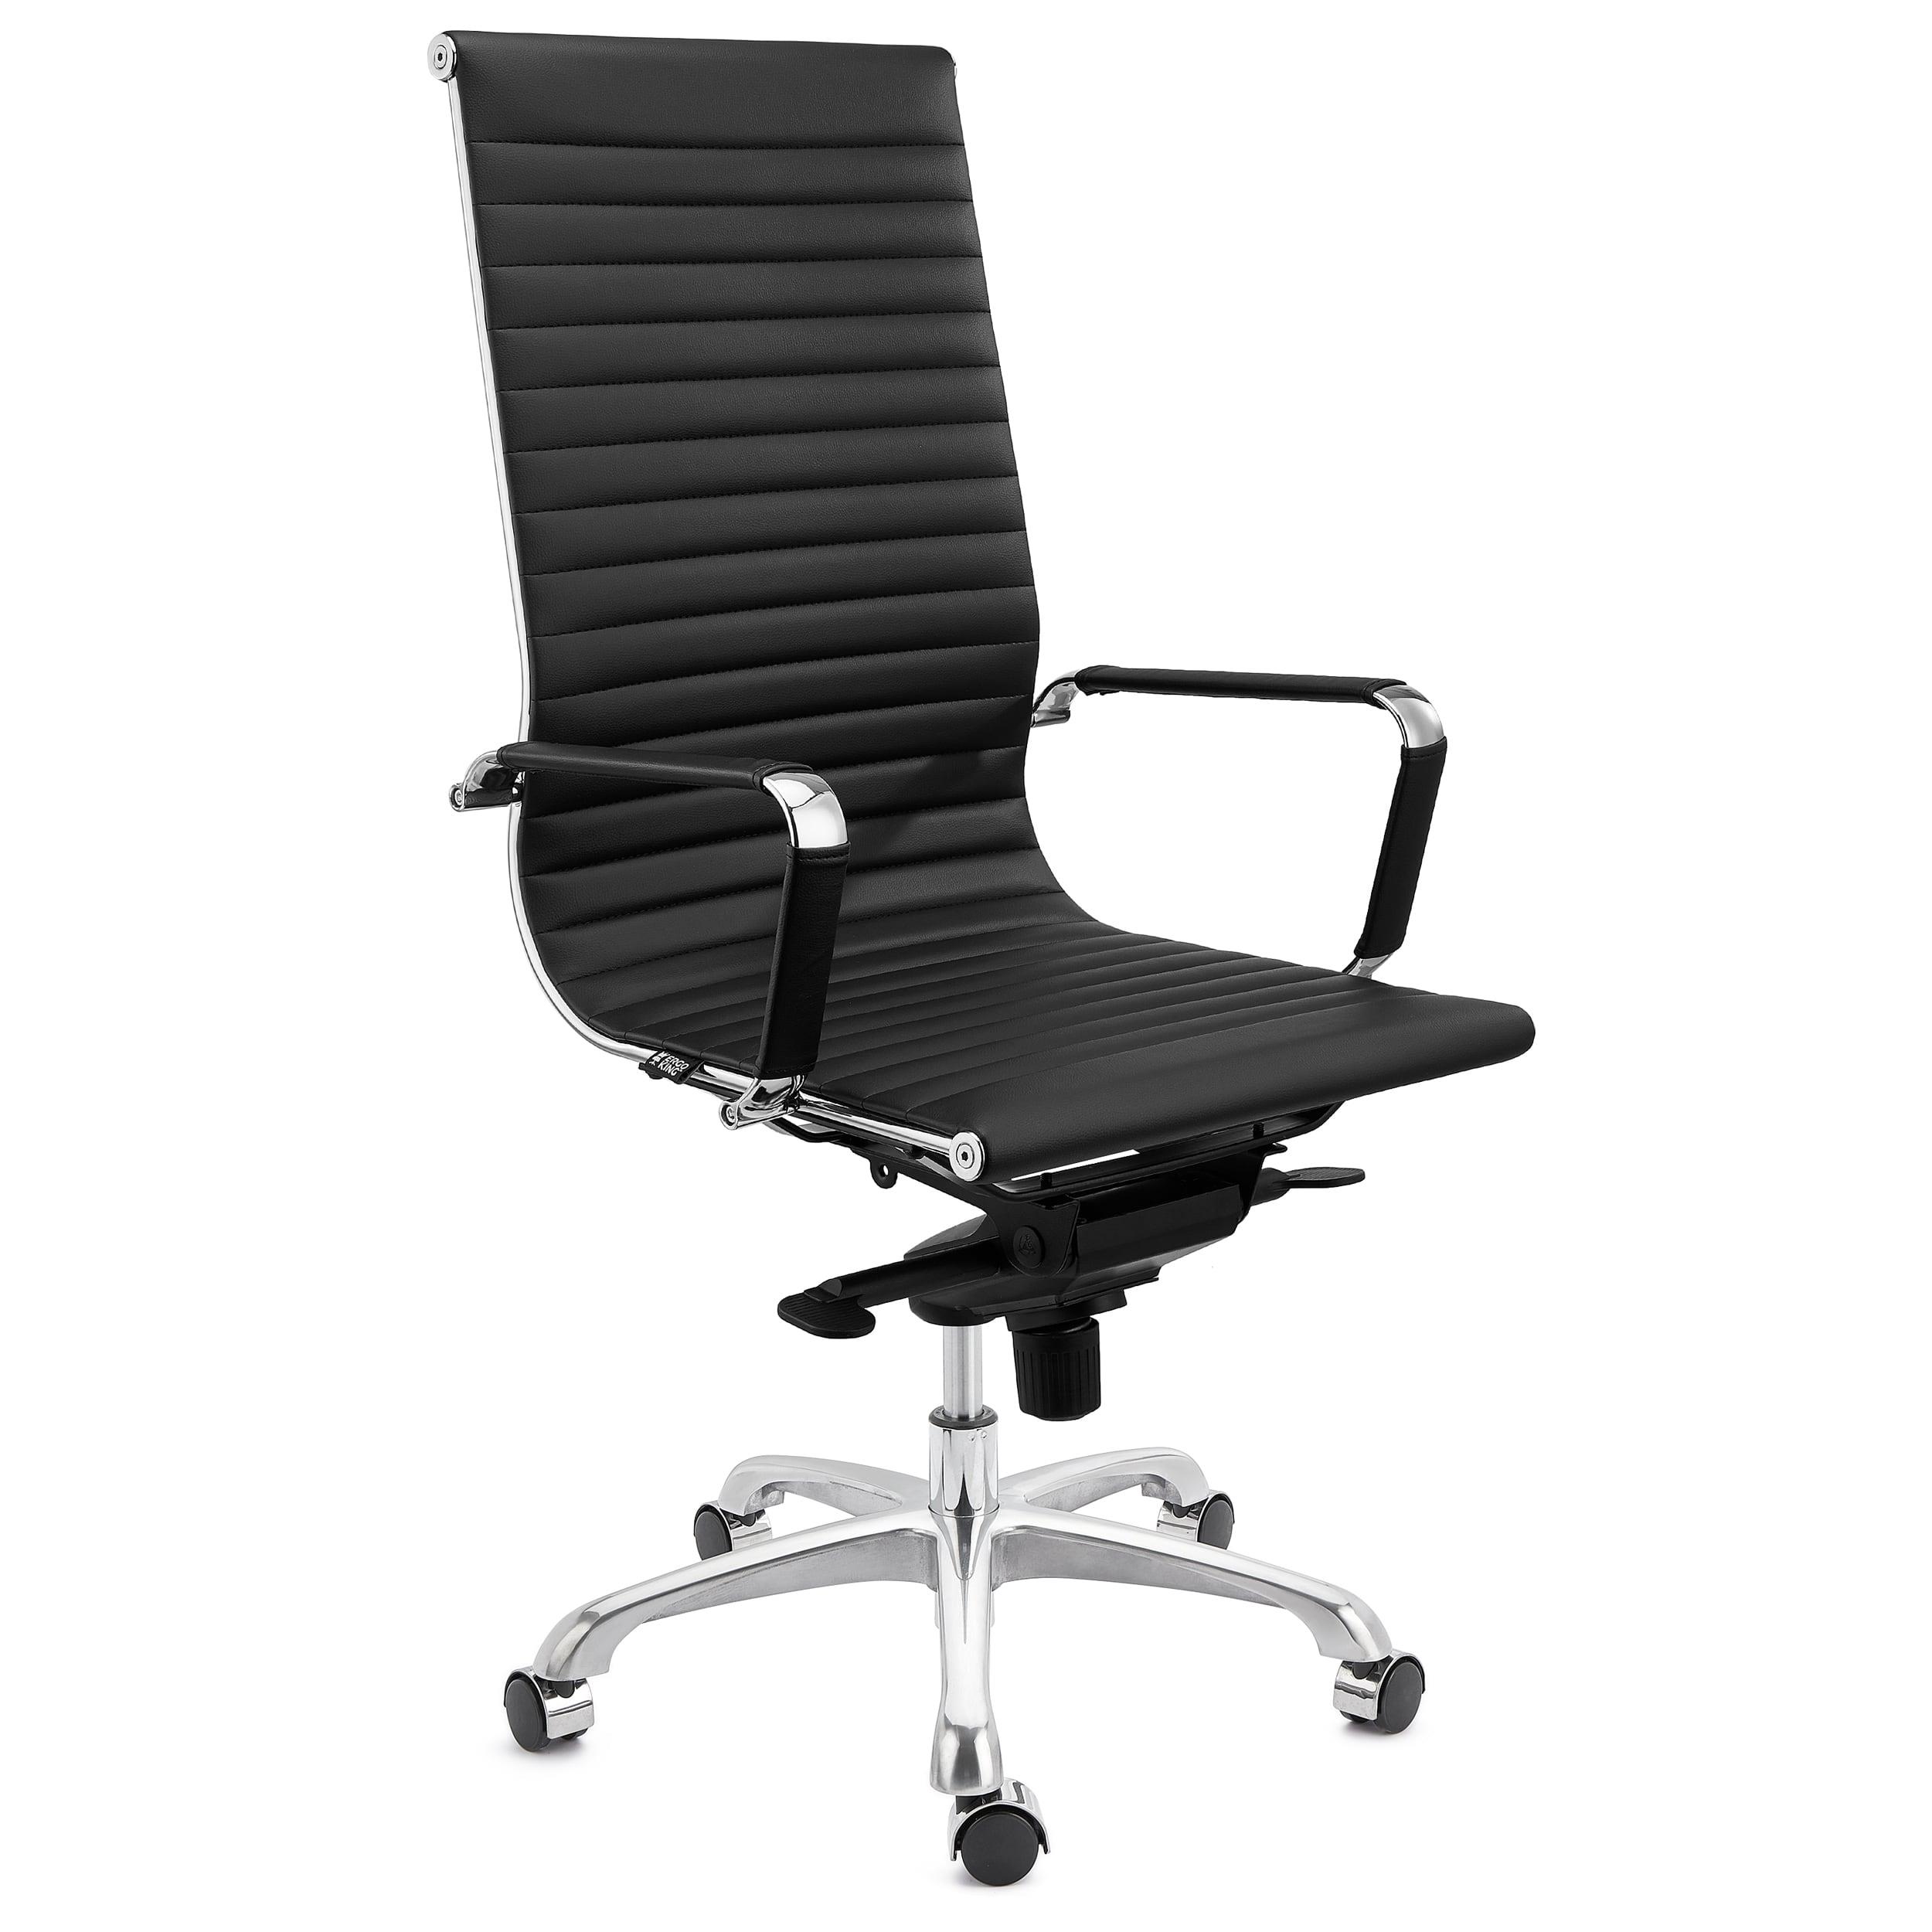 Chaise de Bureau DORIS, structure Métallique Chromée, Finitons élégantes, cuir, Noir